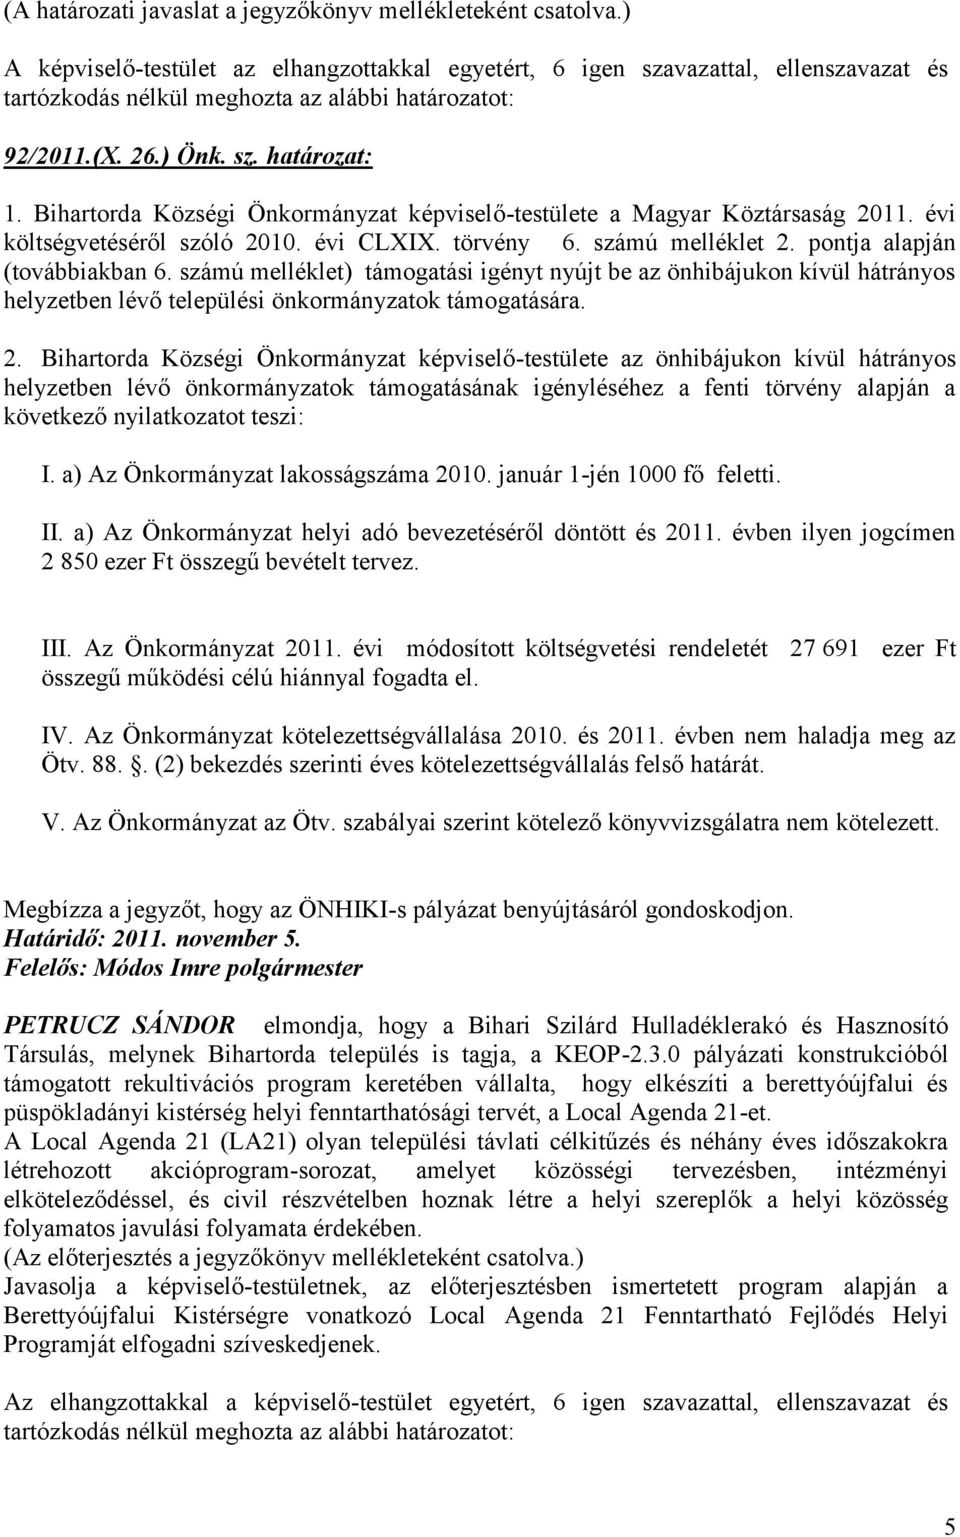 Bihartorda Községi Önkormányzat képviselő-testülete a Magyar Köztársaság 2011. évi költségvetéséről szóló 2010. évi CLXIX. törvény 6. számú melléklet 2. pontja alapján (továbbiakban 6.